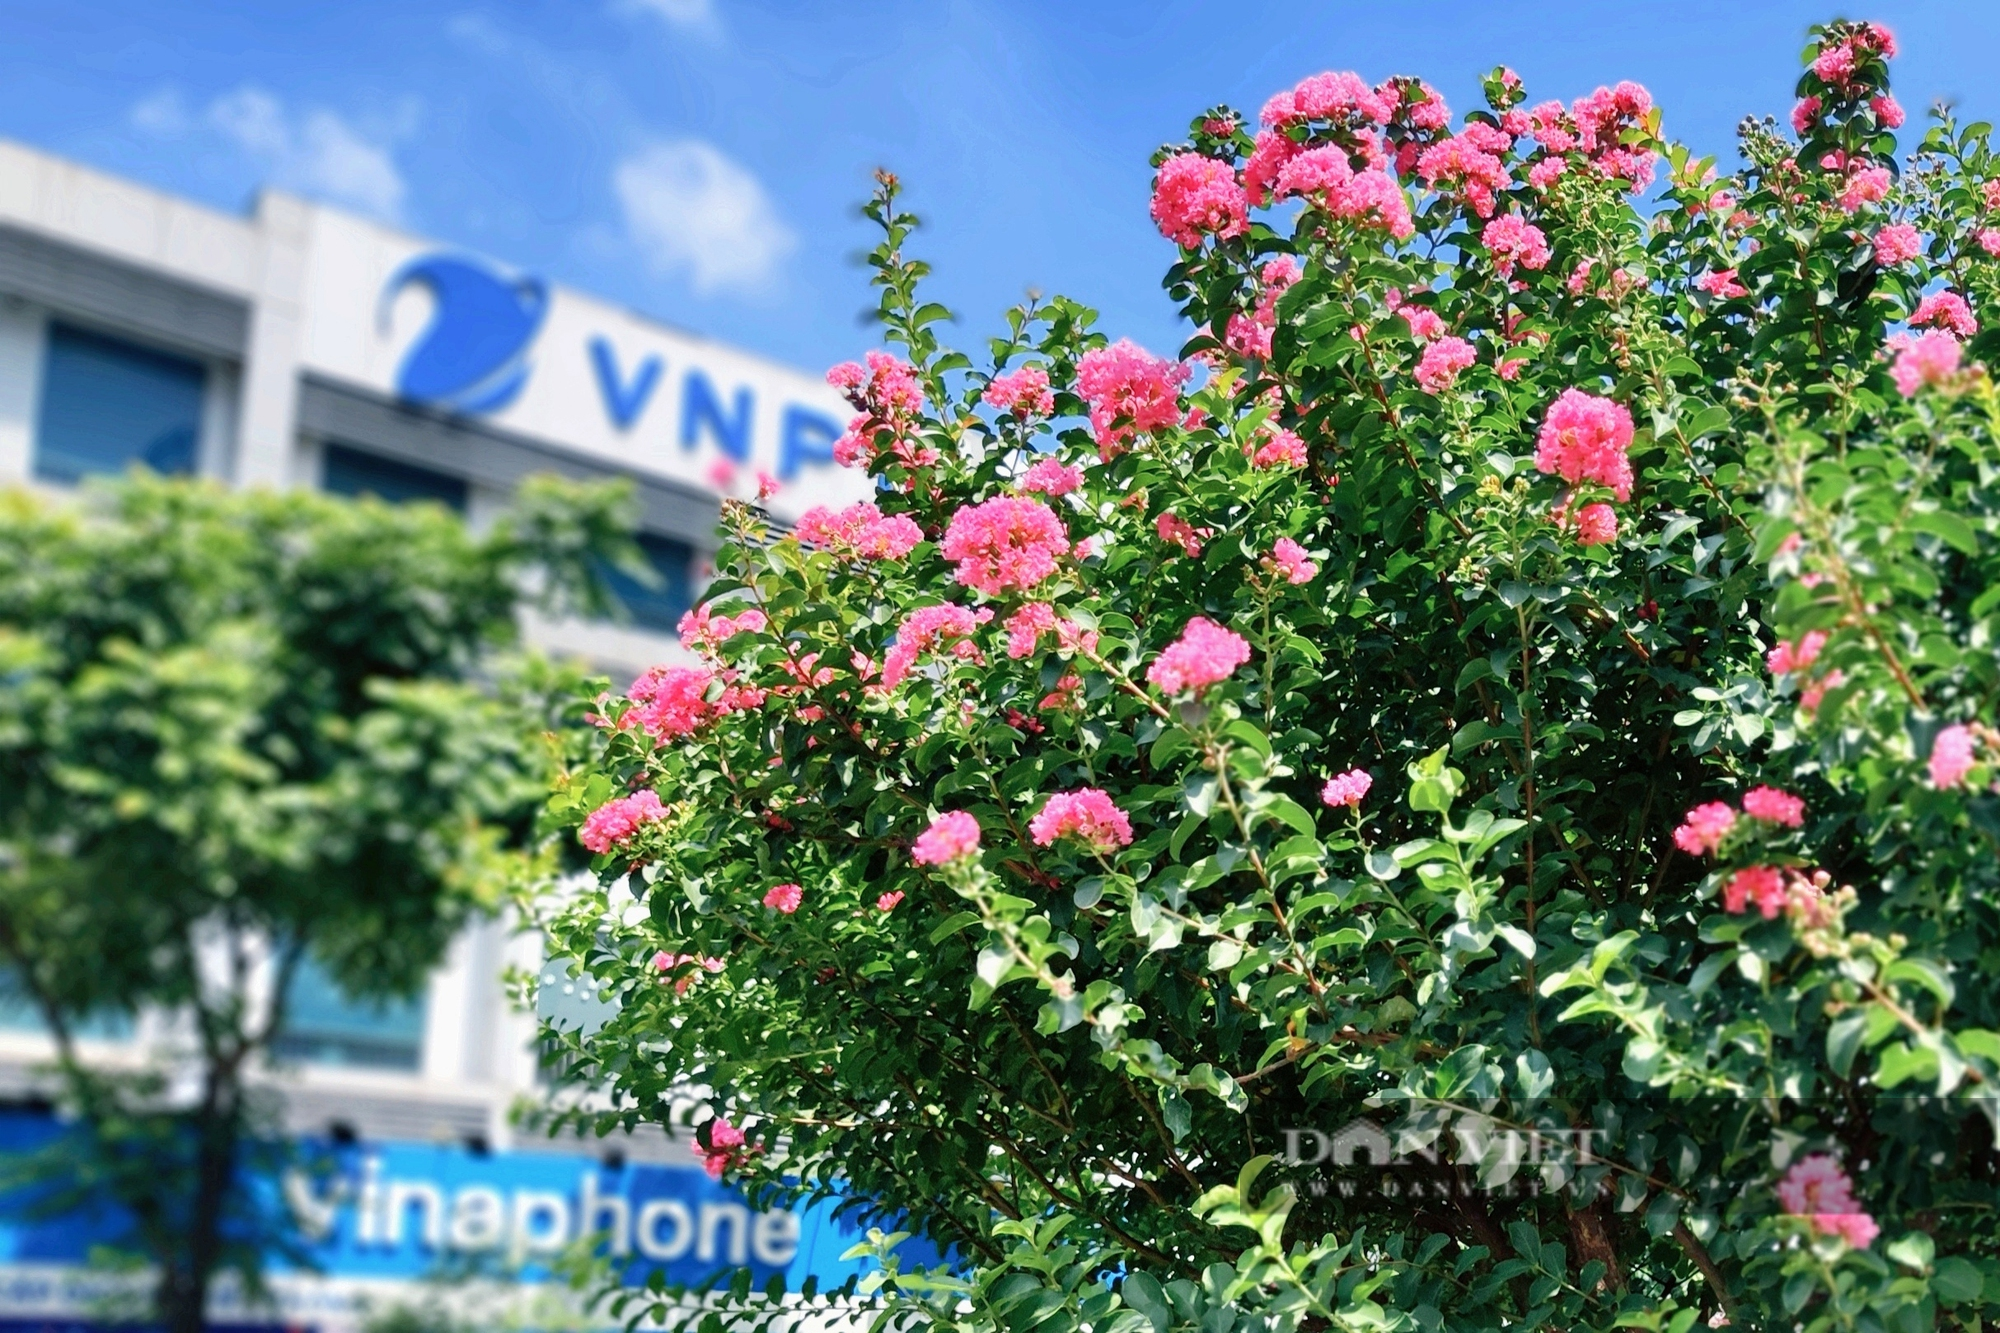 Hàng phong lá đỏ chết khô bị nhổ bỏ, hoa tương vi phủ sắc hồng trên đường Nguyễn Chí Thanh - Ảnh 8.